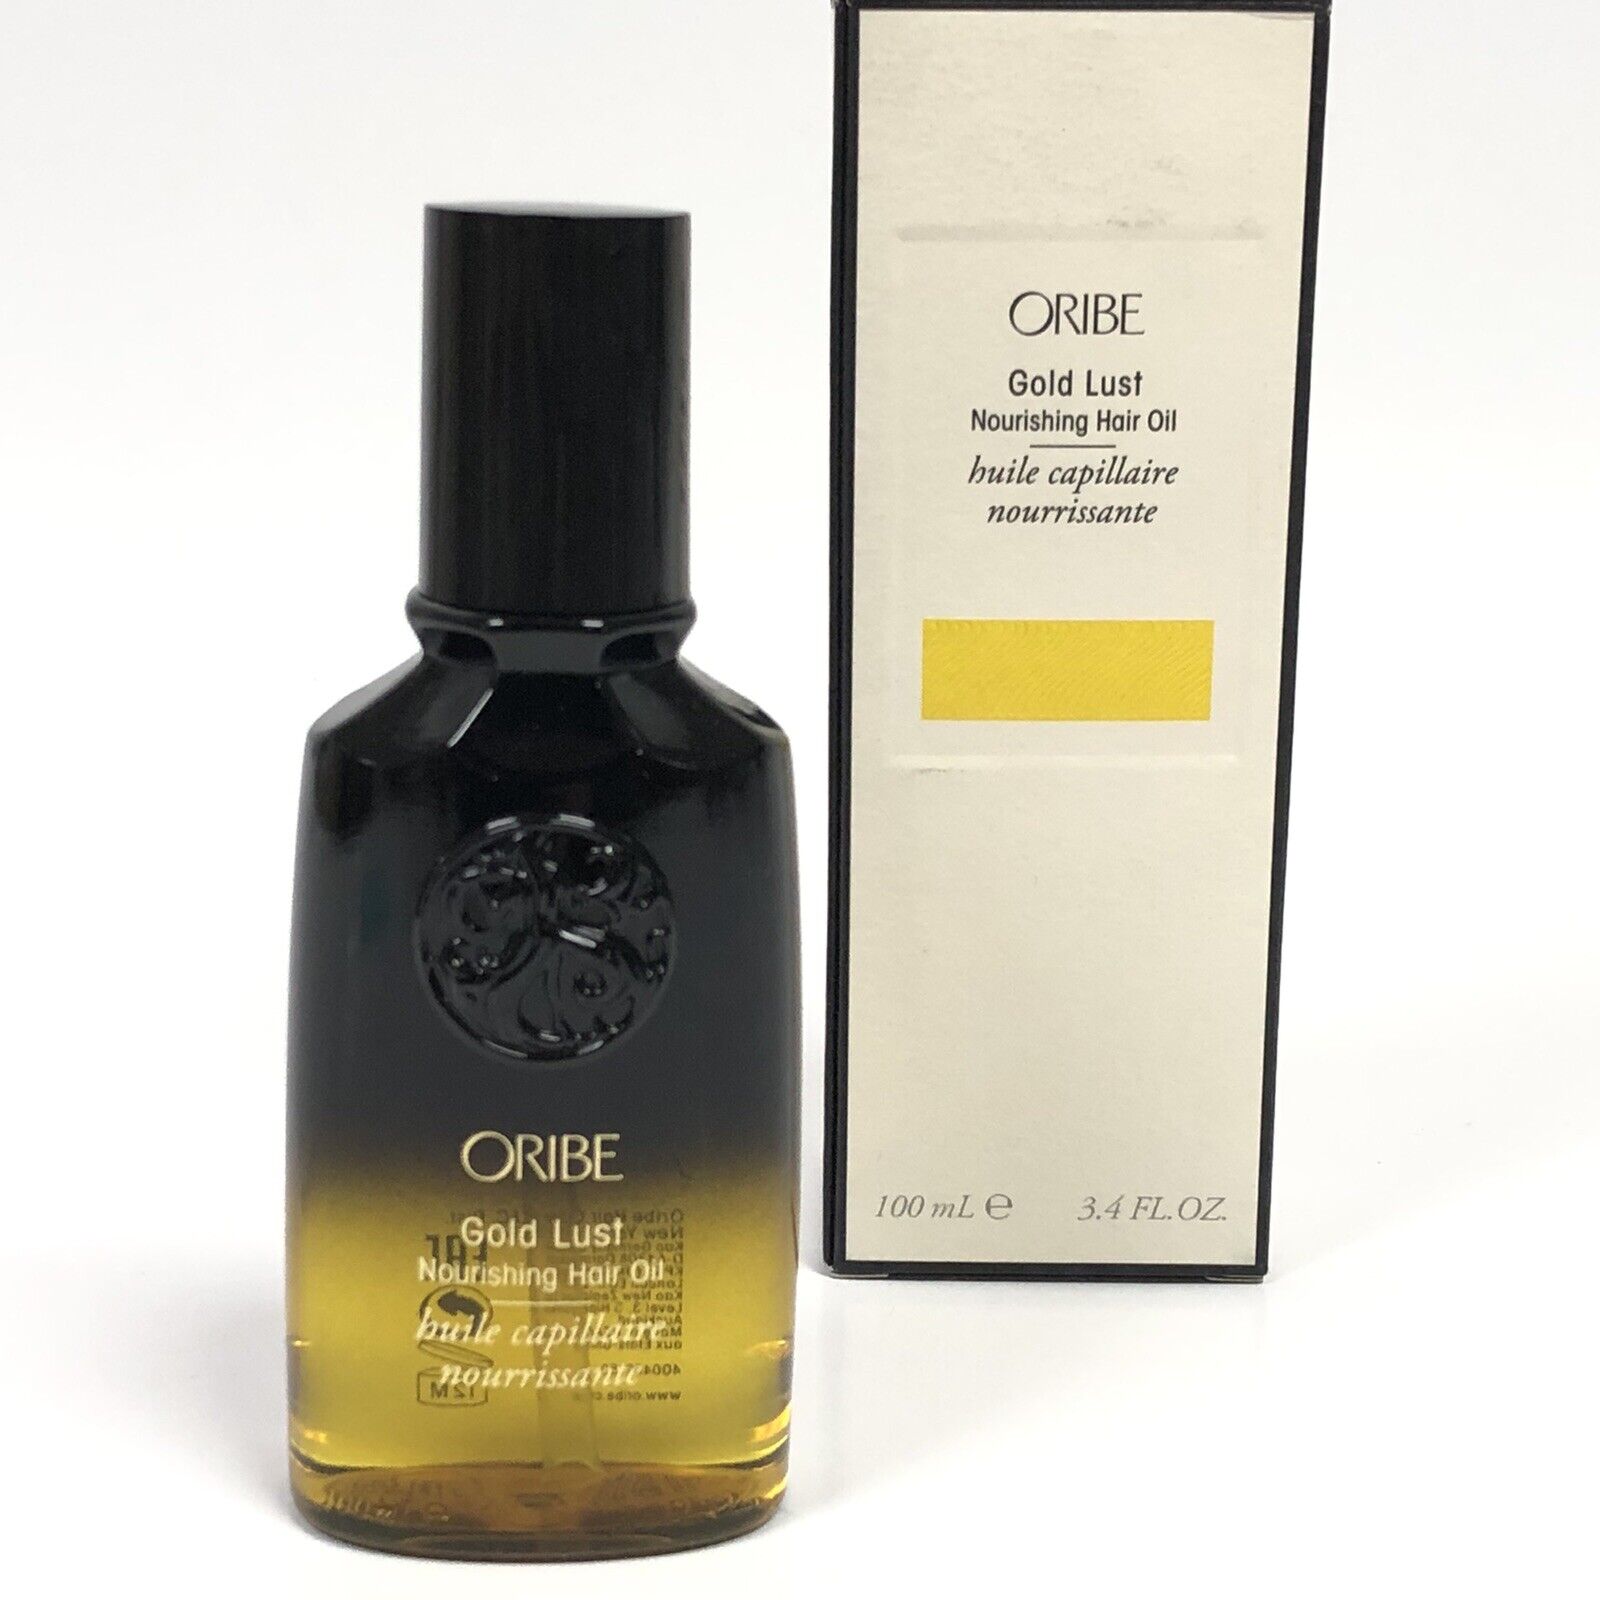 Oribe Gold Lust Nourishing Hair Oil 3.4 fl oz 100mL Bottle New In Box